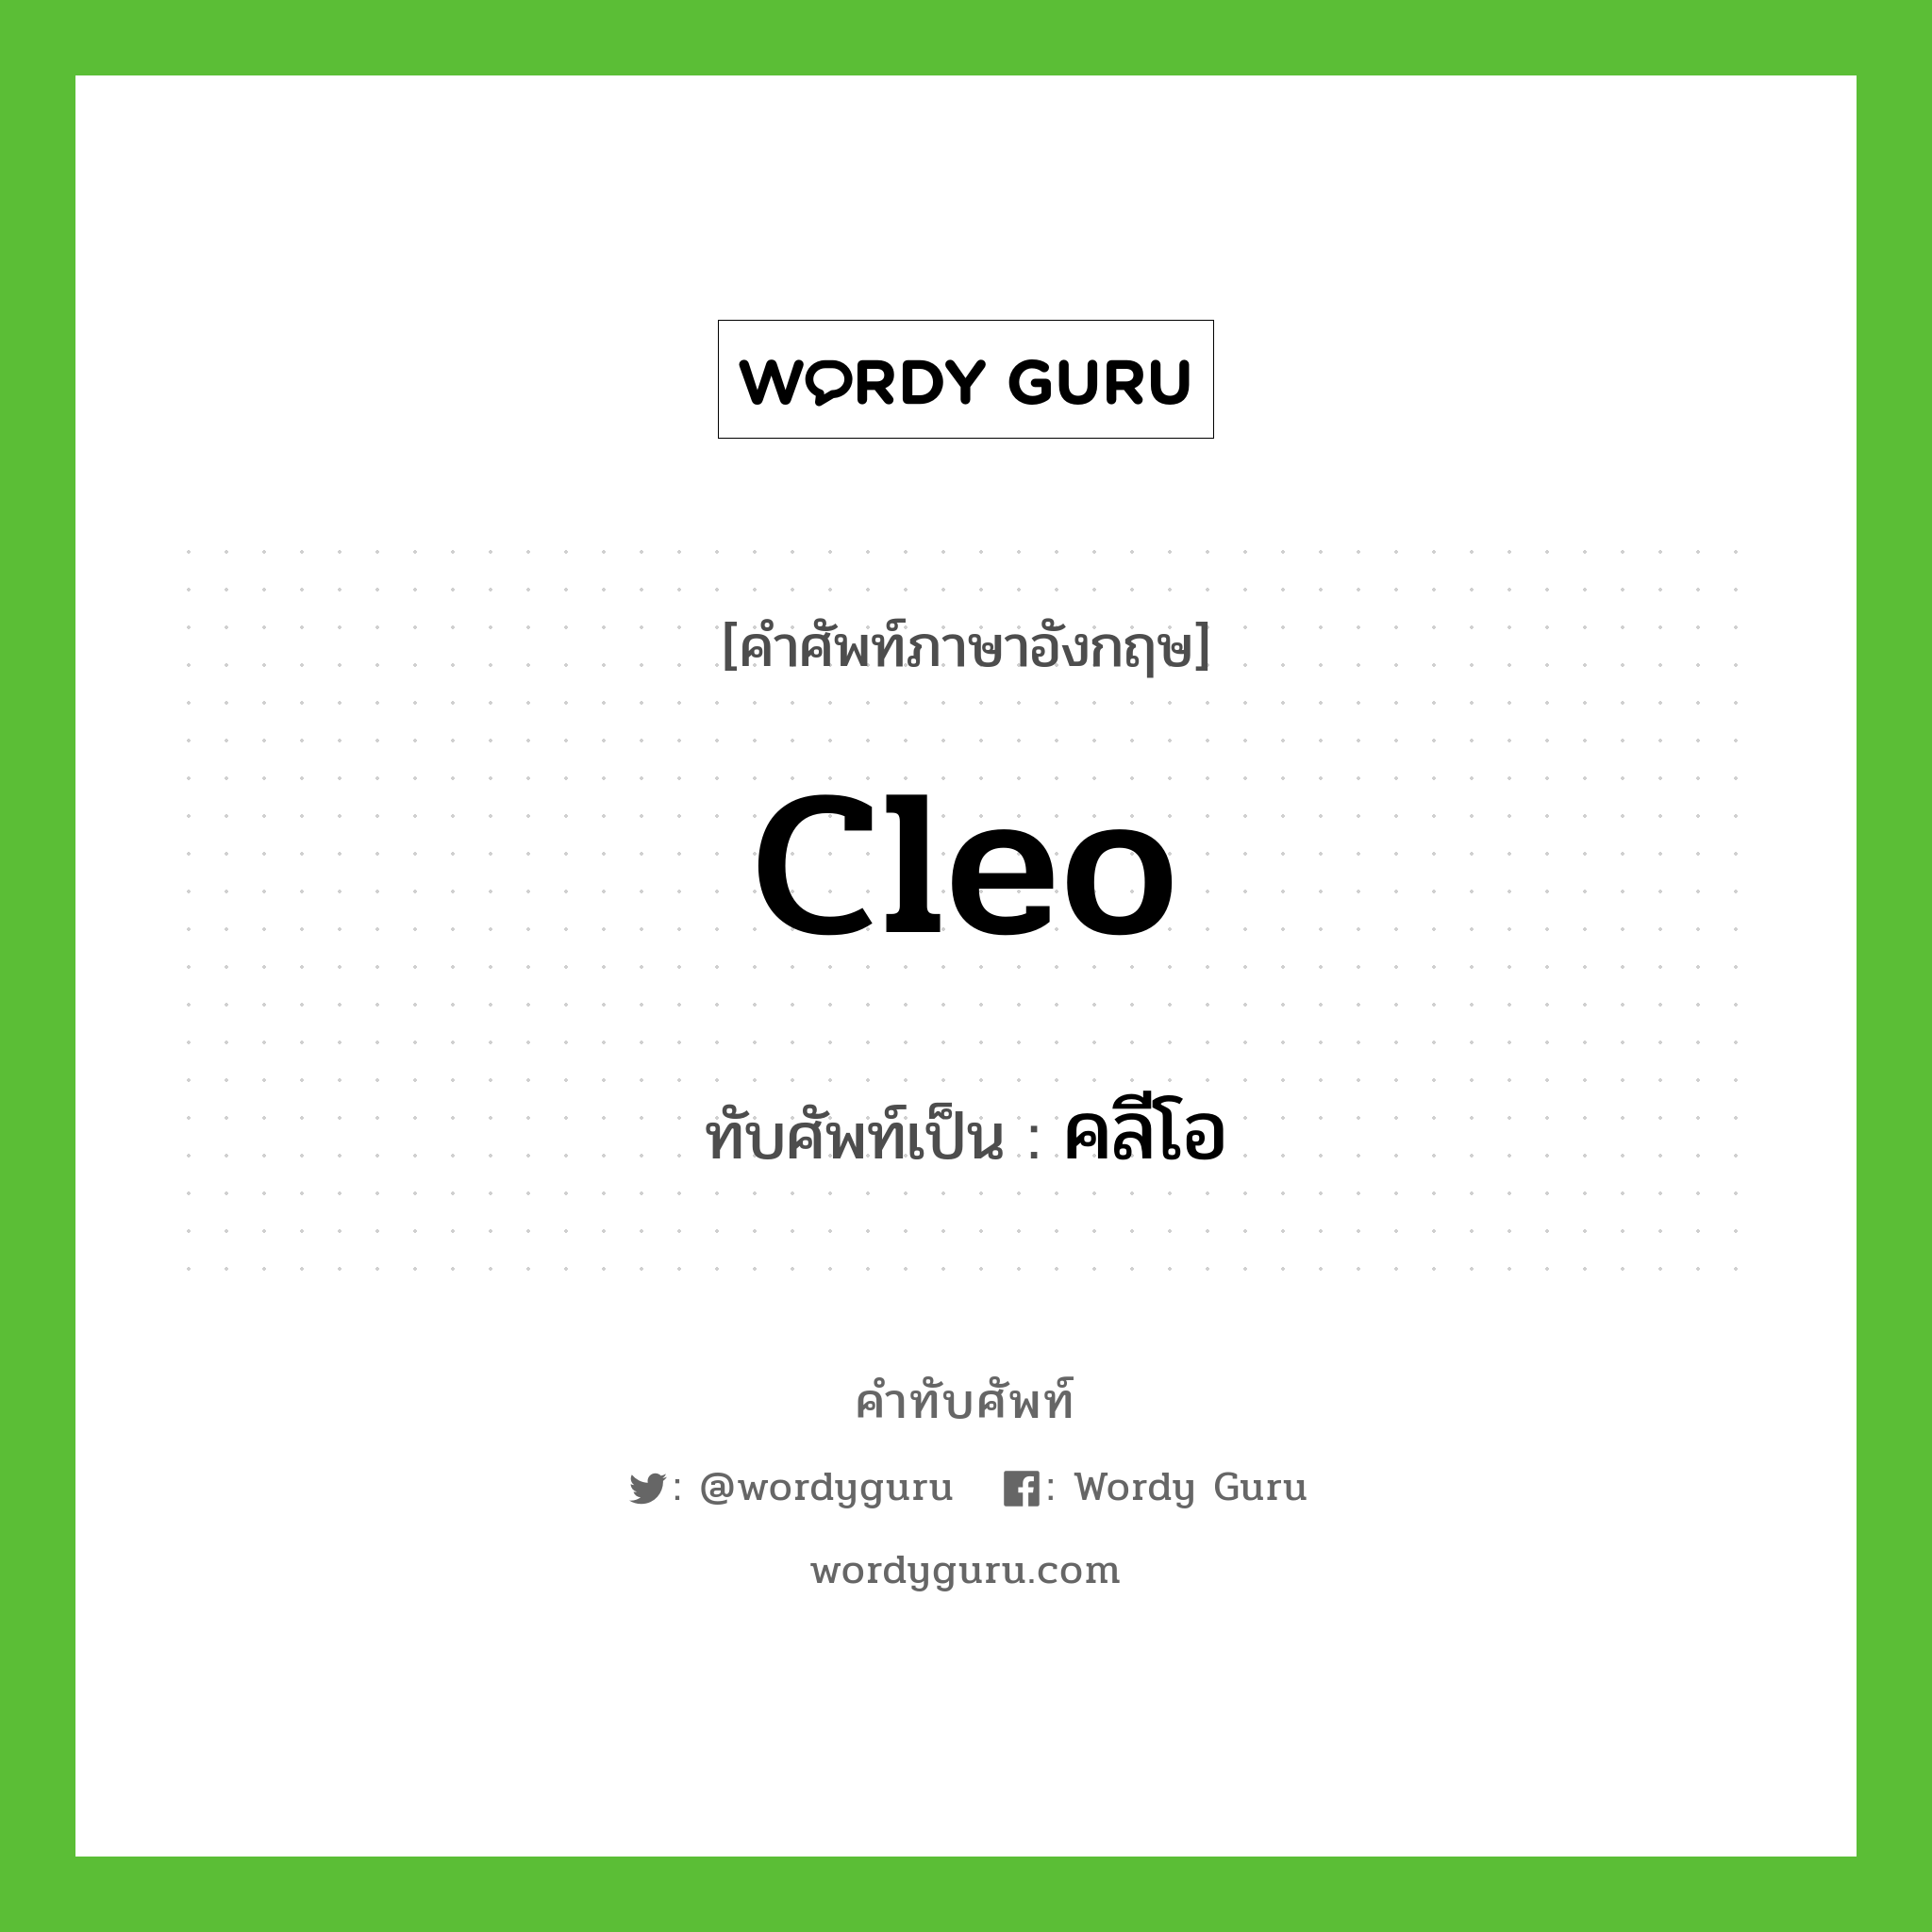 Cleo เขียนเป็นคำไทยว่าอะไร?, คำศัพท์ภาษาอังกฤษ Cleo ทับศัพท์เป็น คลีโอ